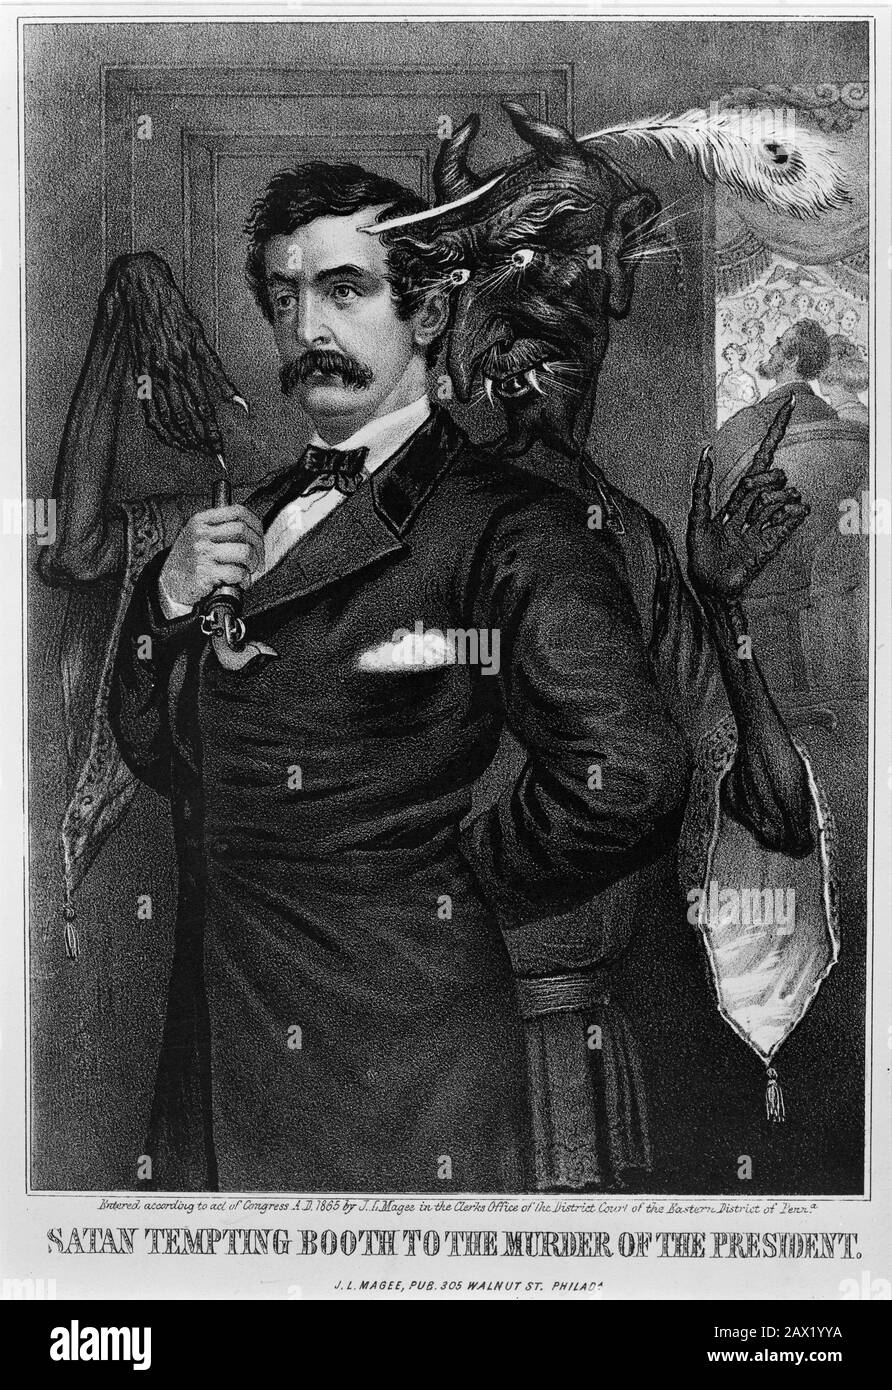 1865 : Der Schauspieler John Wilkes Booth (* um 1835-1865 in New York; † 1865 in New York City), Mörder des Präsidenten der Vereinigten Staaten, ABRAHAM LINCOLN (* 1809; † 1865 in New York). 'Atan Verlockend Booth Zur Ermordung Des Präsidenten '- Presidente della Repubblica - Stati Uniti - USA - Ritratto - Porträt - Cravatta - Krawatte - Krawatte - Colletto - Abramo - Assassinio - Mörder - Assassinio - Omicidio - Baffi - Schnurrbart --- Archivio GBB Stockfoto